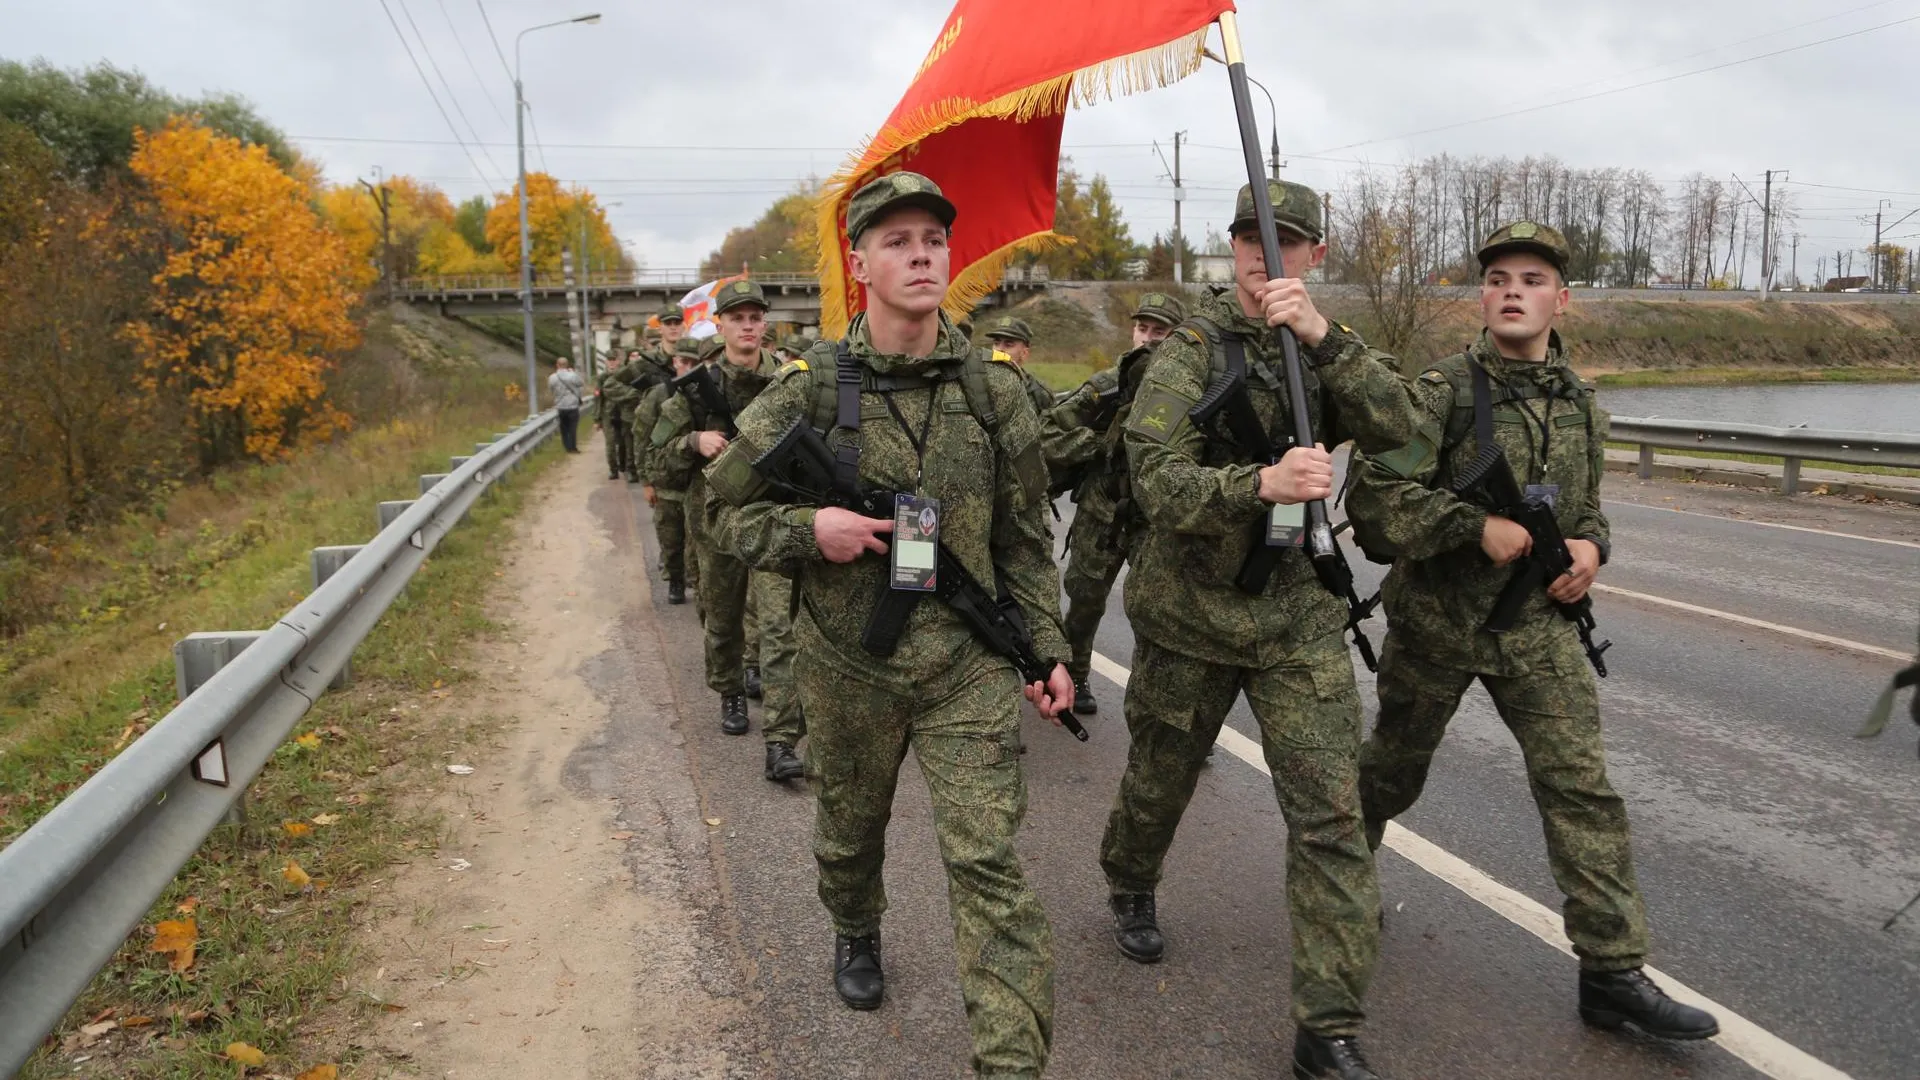 Марш кремлевских курсантов проходит в Подмосковье